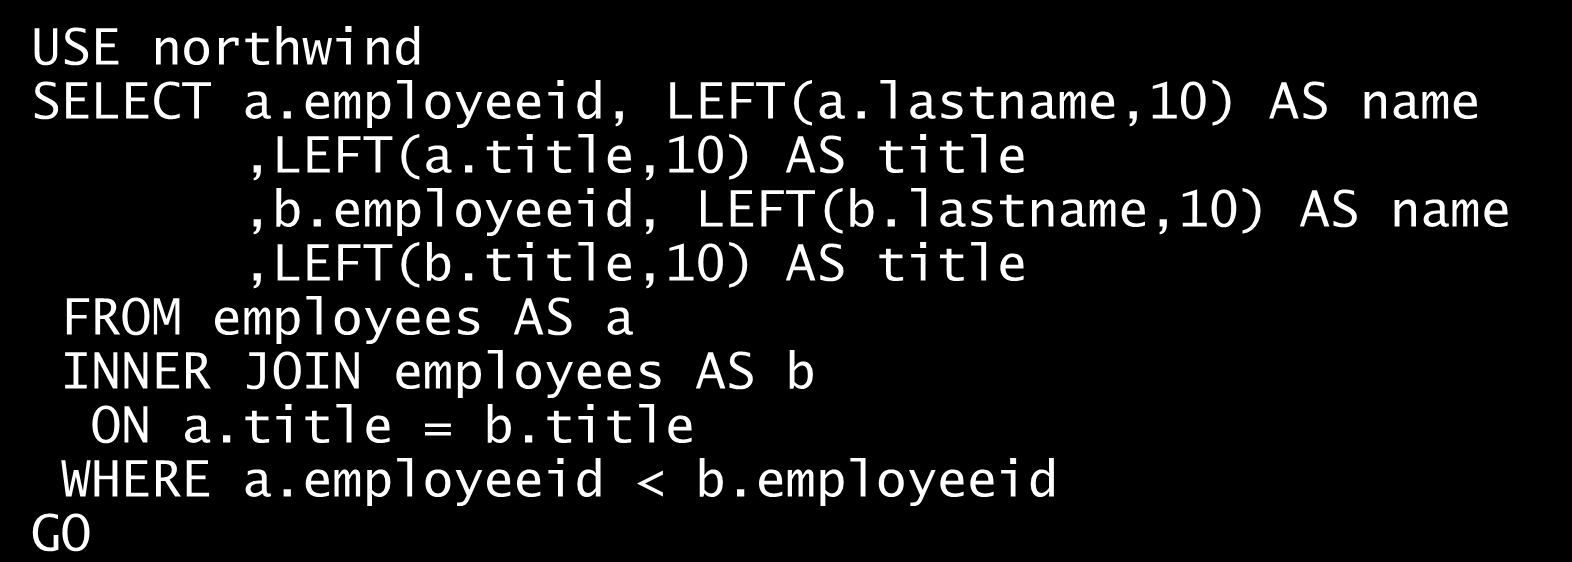 Przykłady Napisz polecenie, które pokazuje pary pracowników zajmujących to samo stanowisko. USE northwind SELECT a.employeeid, LEFT(a.lastname,0) AS name,left(a.